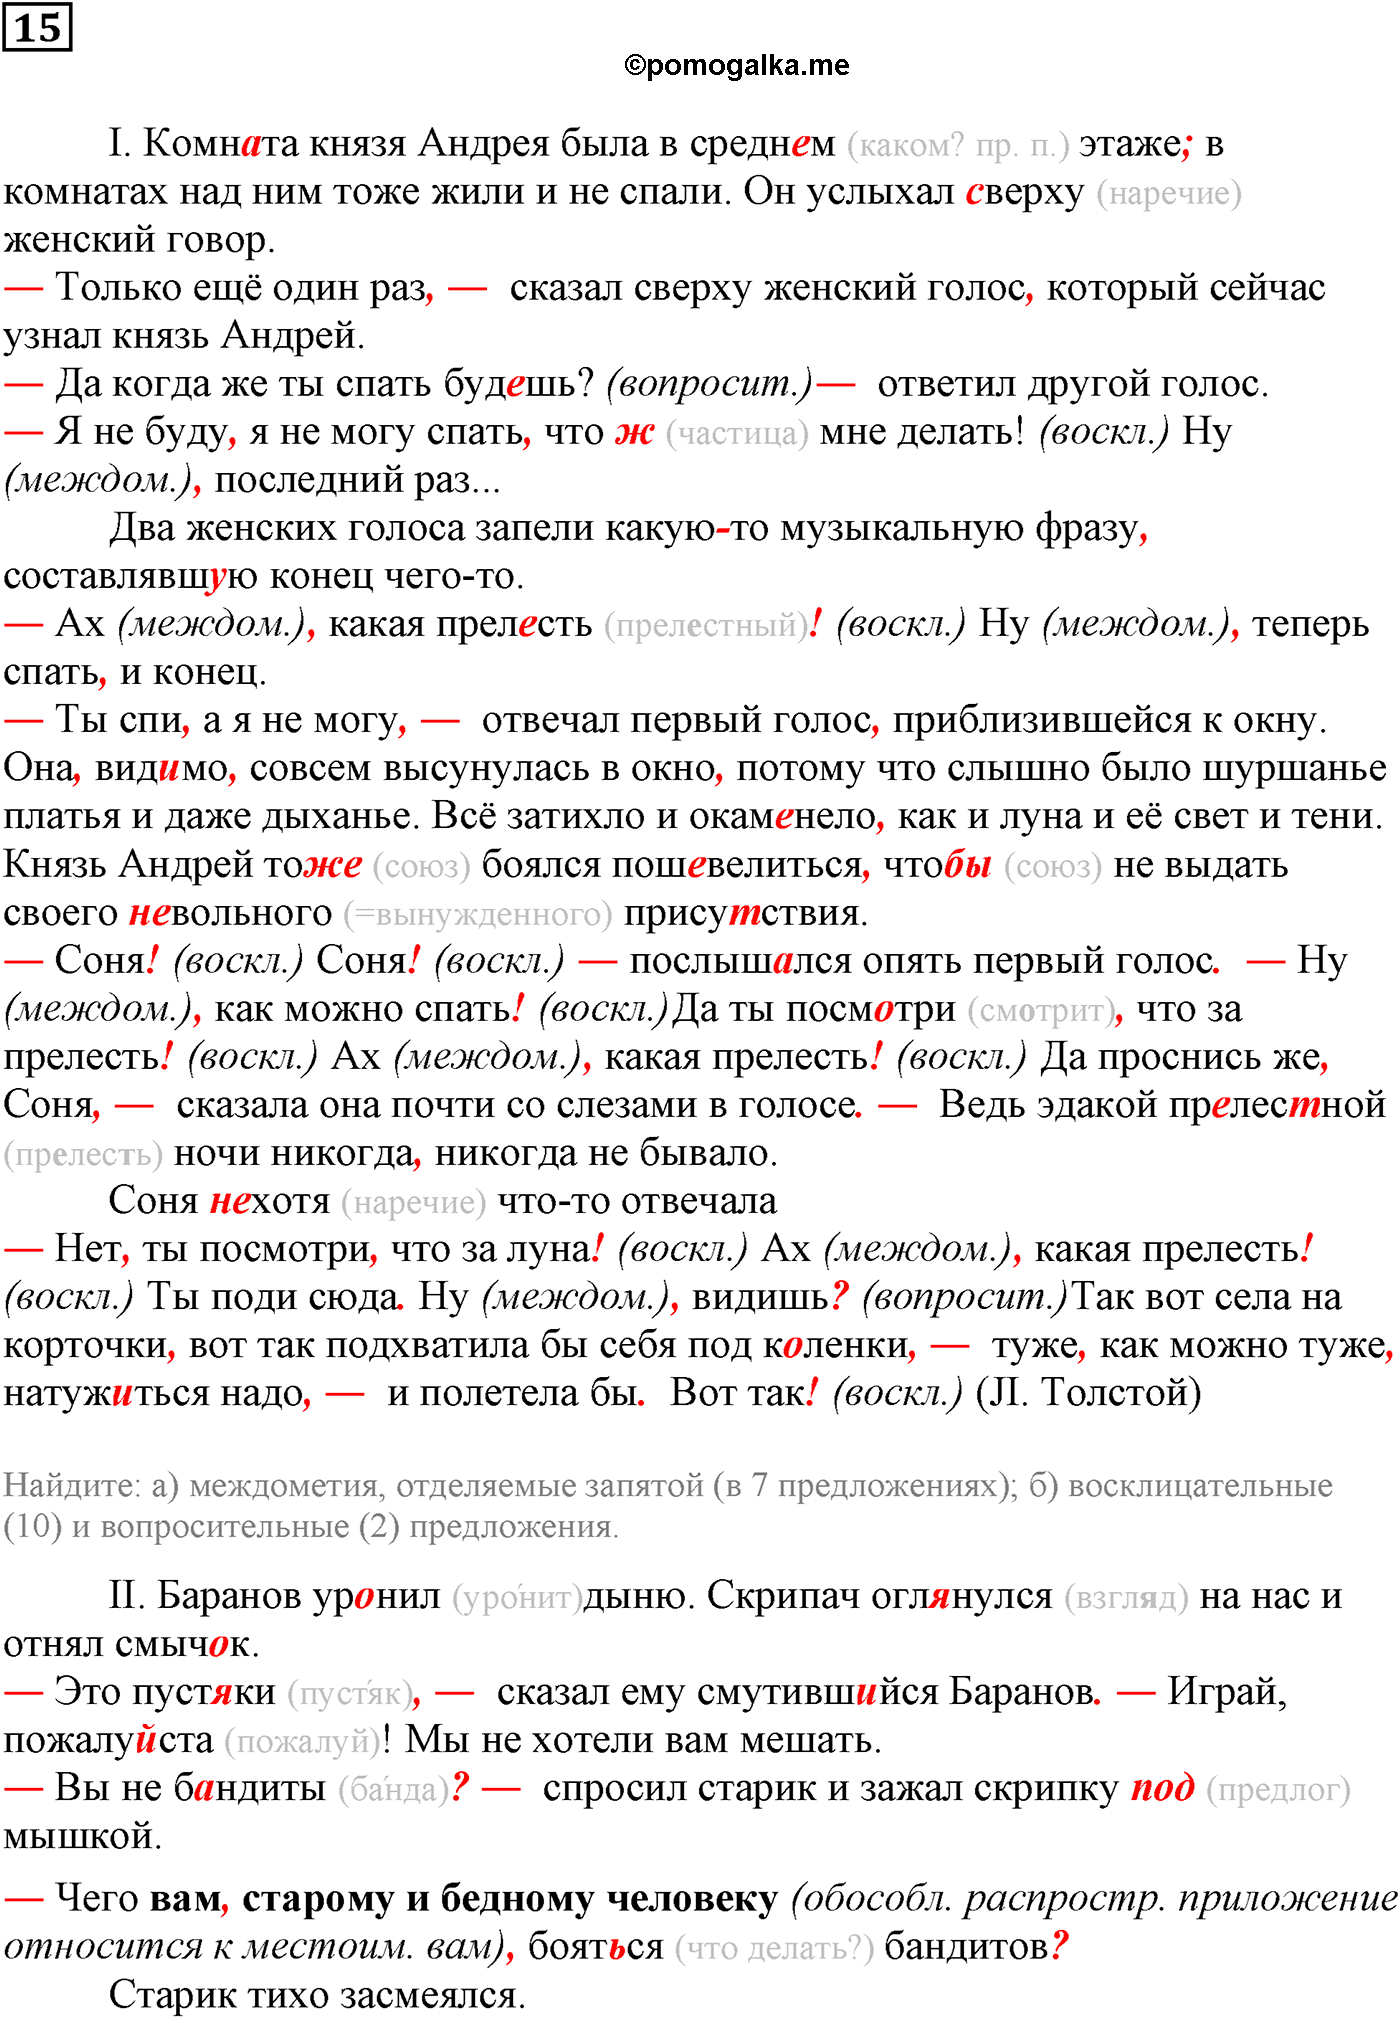 упражнение №15 русский язык 10-11 класс Власенков